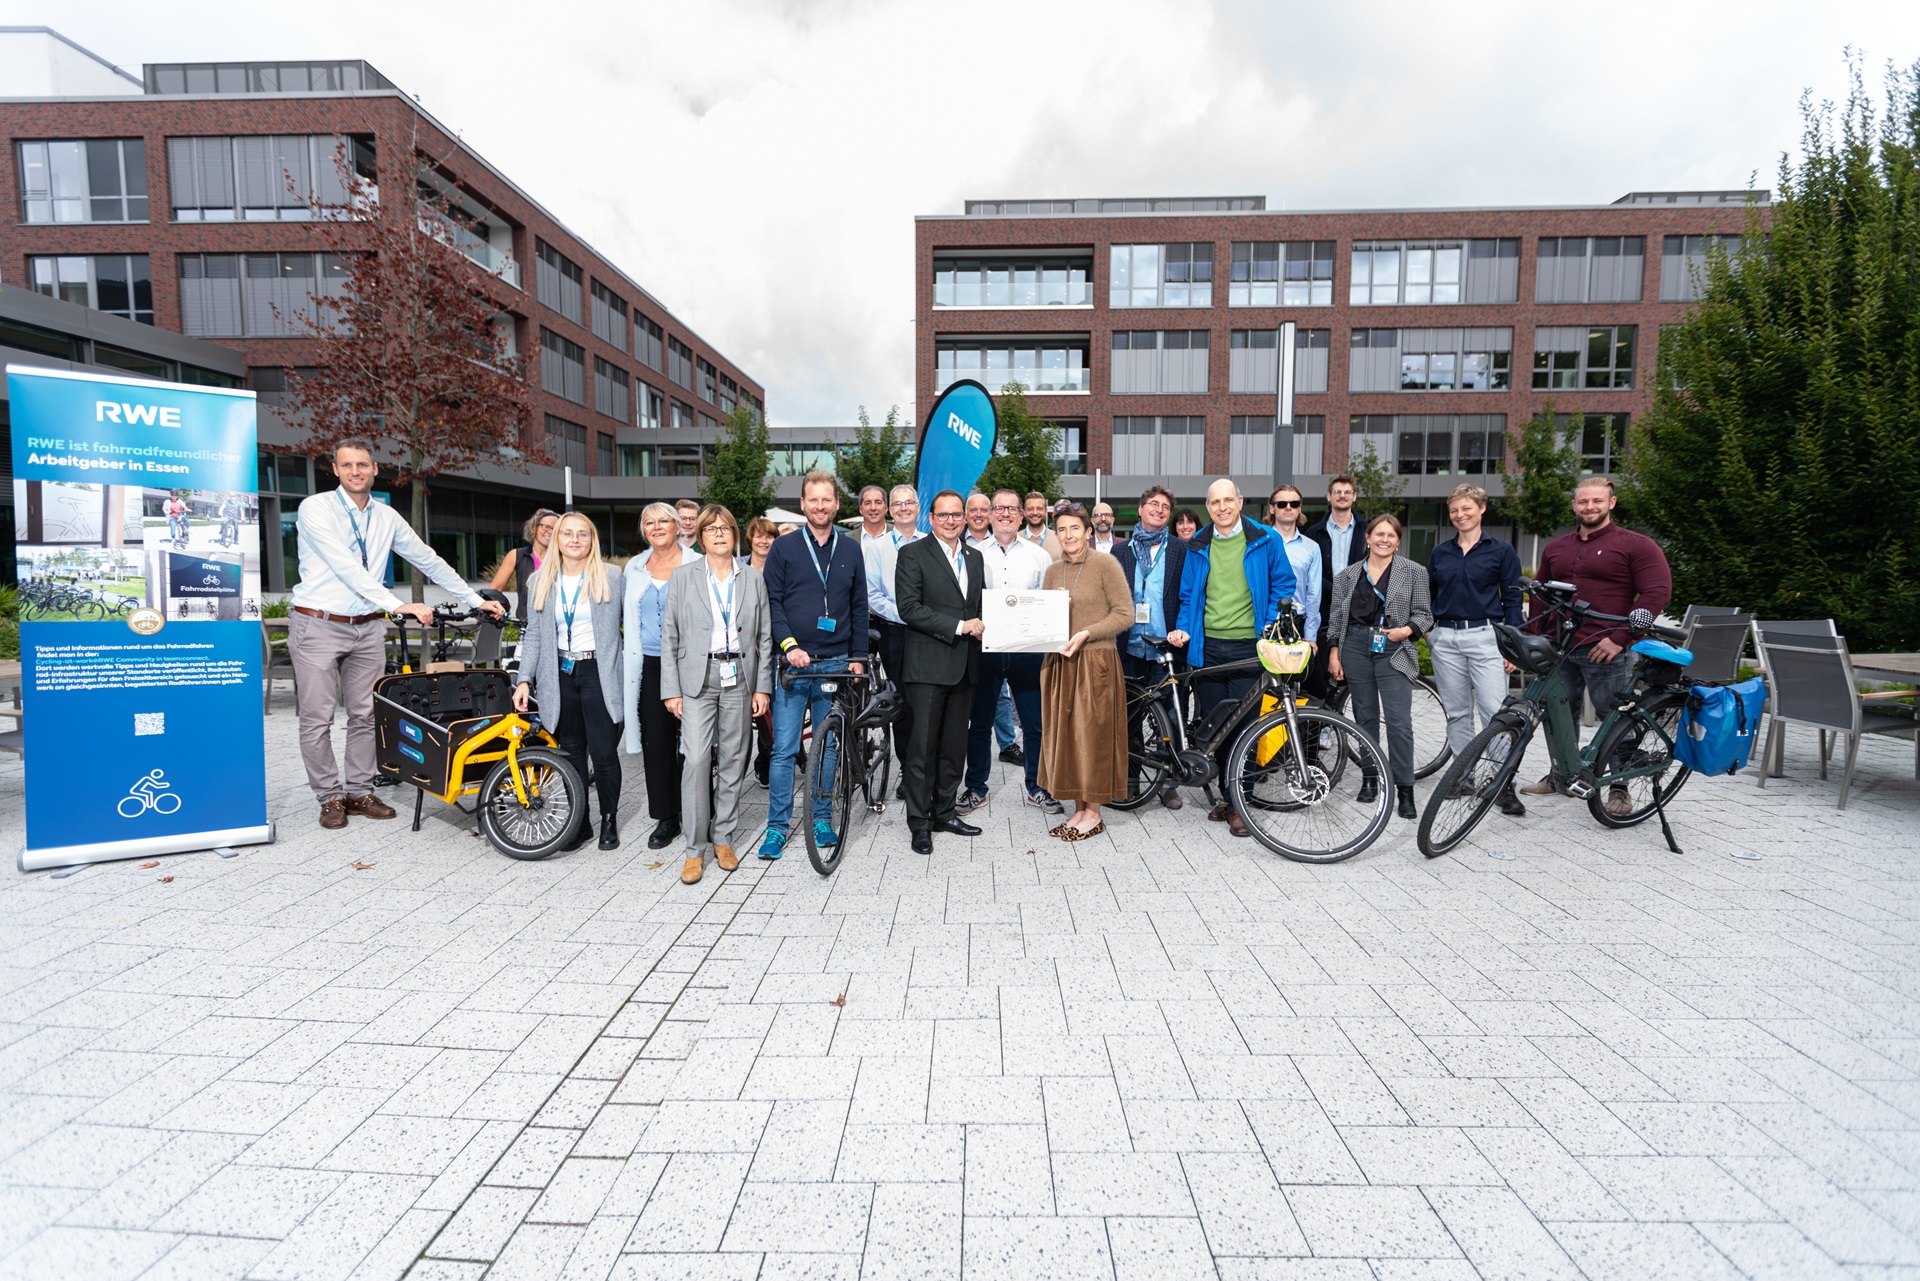 RWE Campus als fahrradfreundlich zertifiziert 